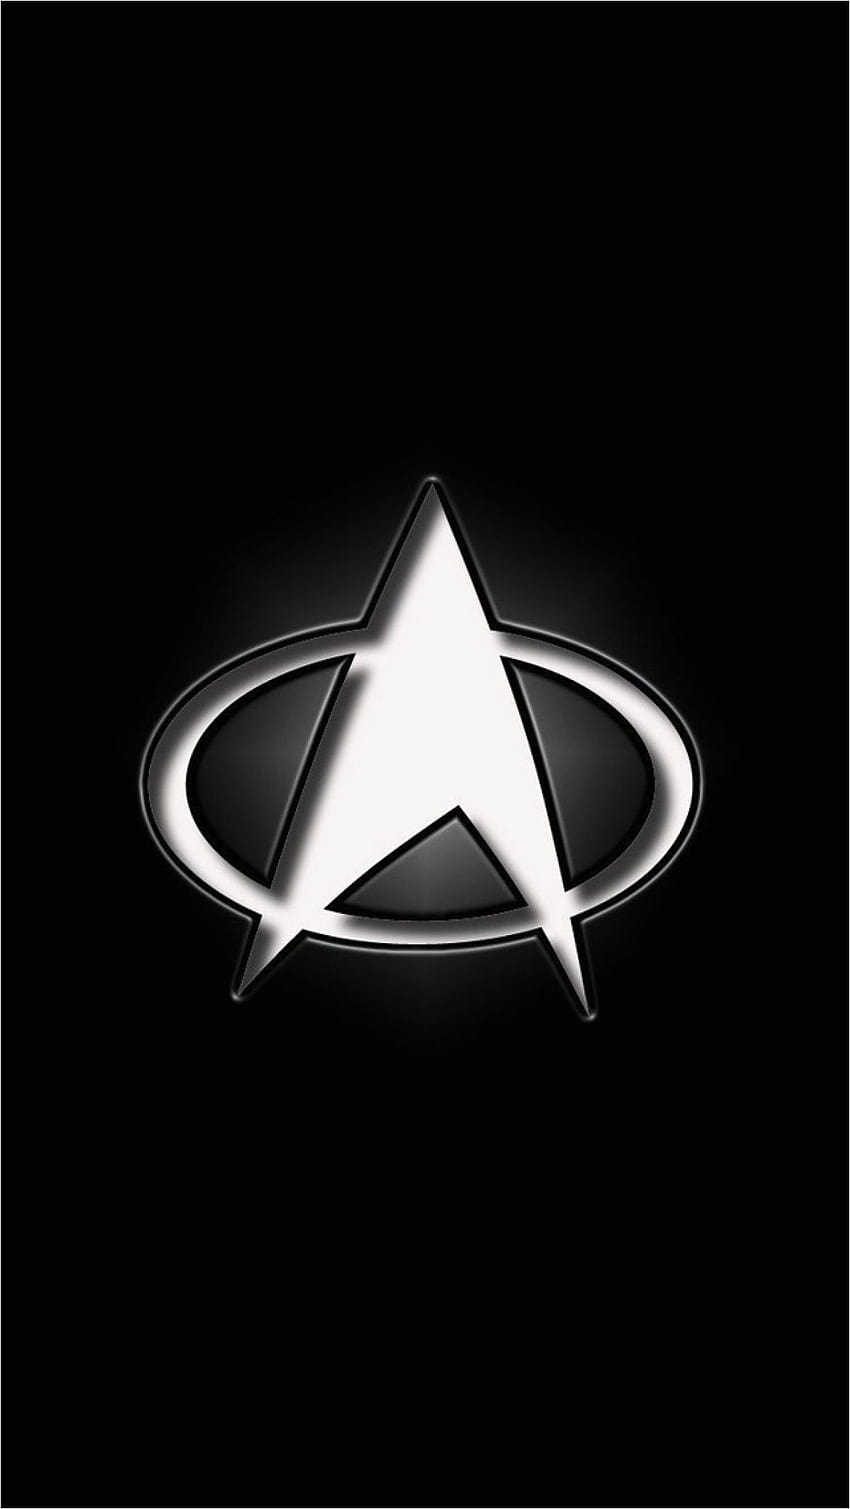 Teléfono de Star Trek publicado por Zoey Walker, teléfono de Star Trek Picard fondo de pantalla del teléfono